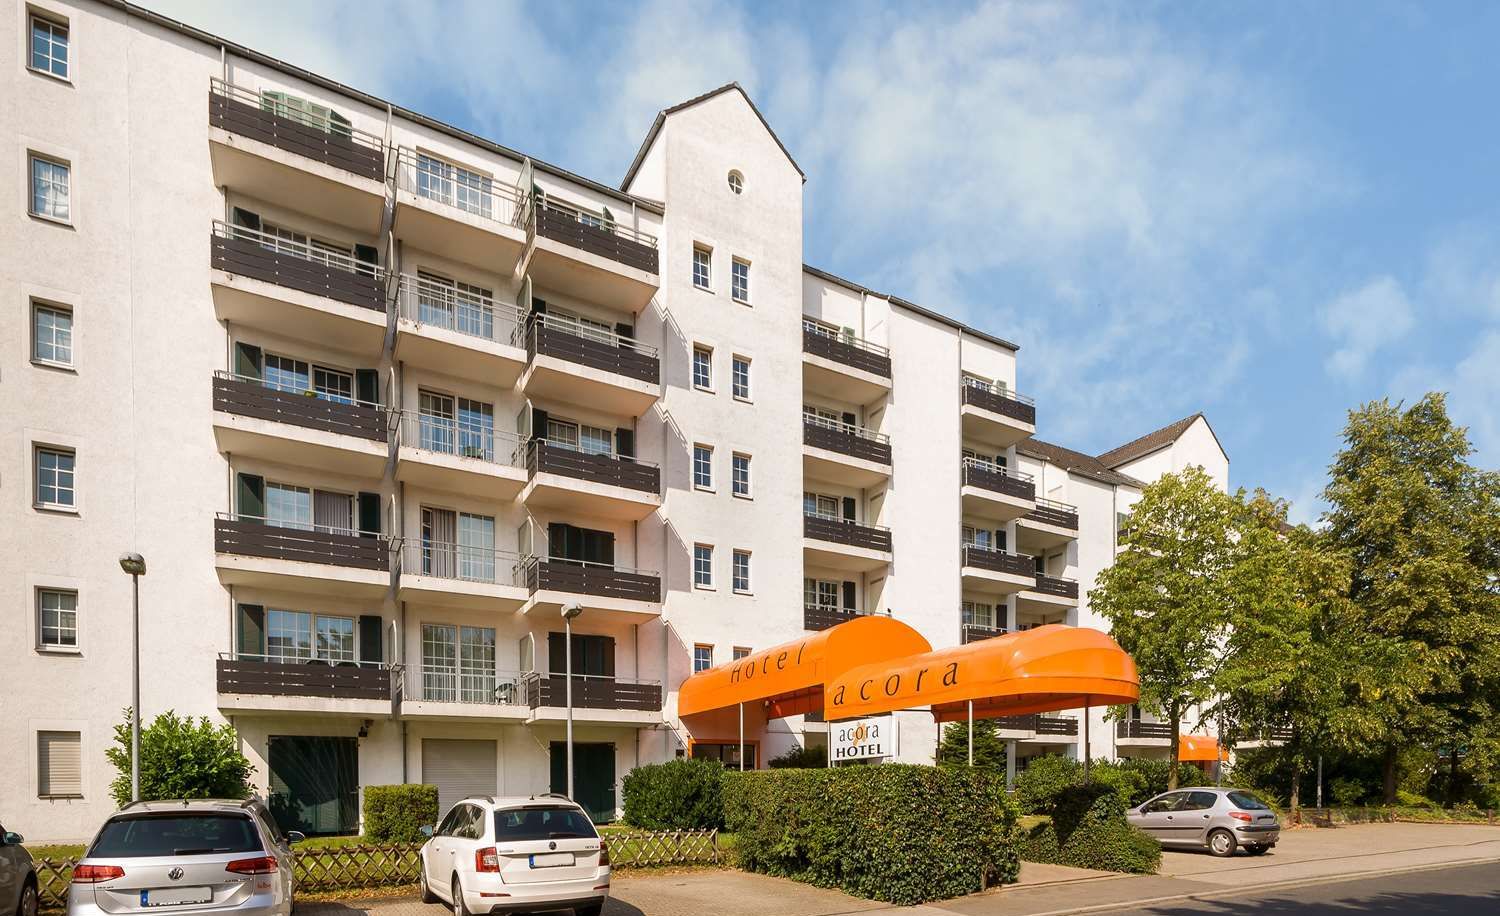 acora Hotel und Wohnen Düsseldorf